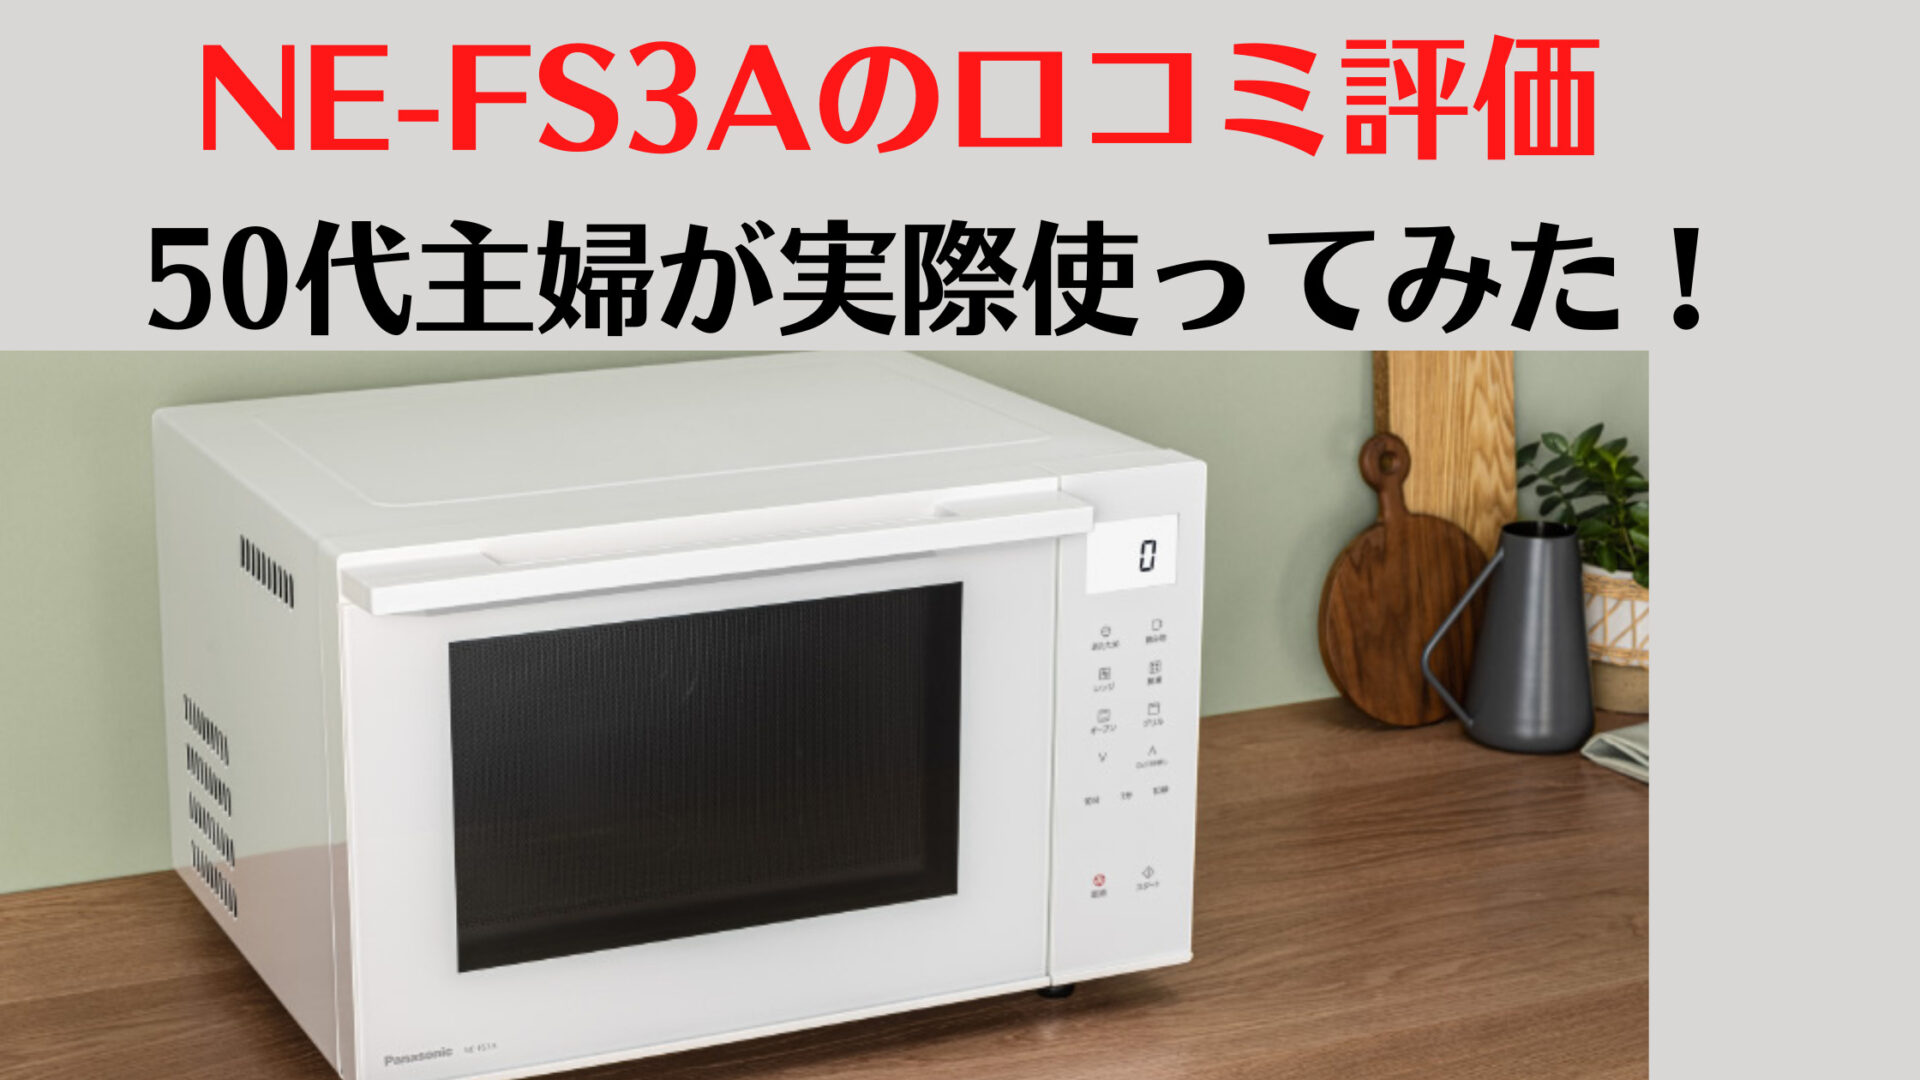 Panasonic NE-FS3A-W オーブンレンジ 23L ホワイト - 電子レンジ/オーブン